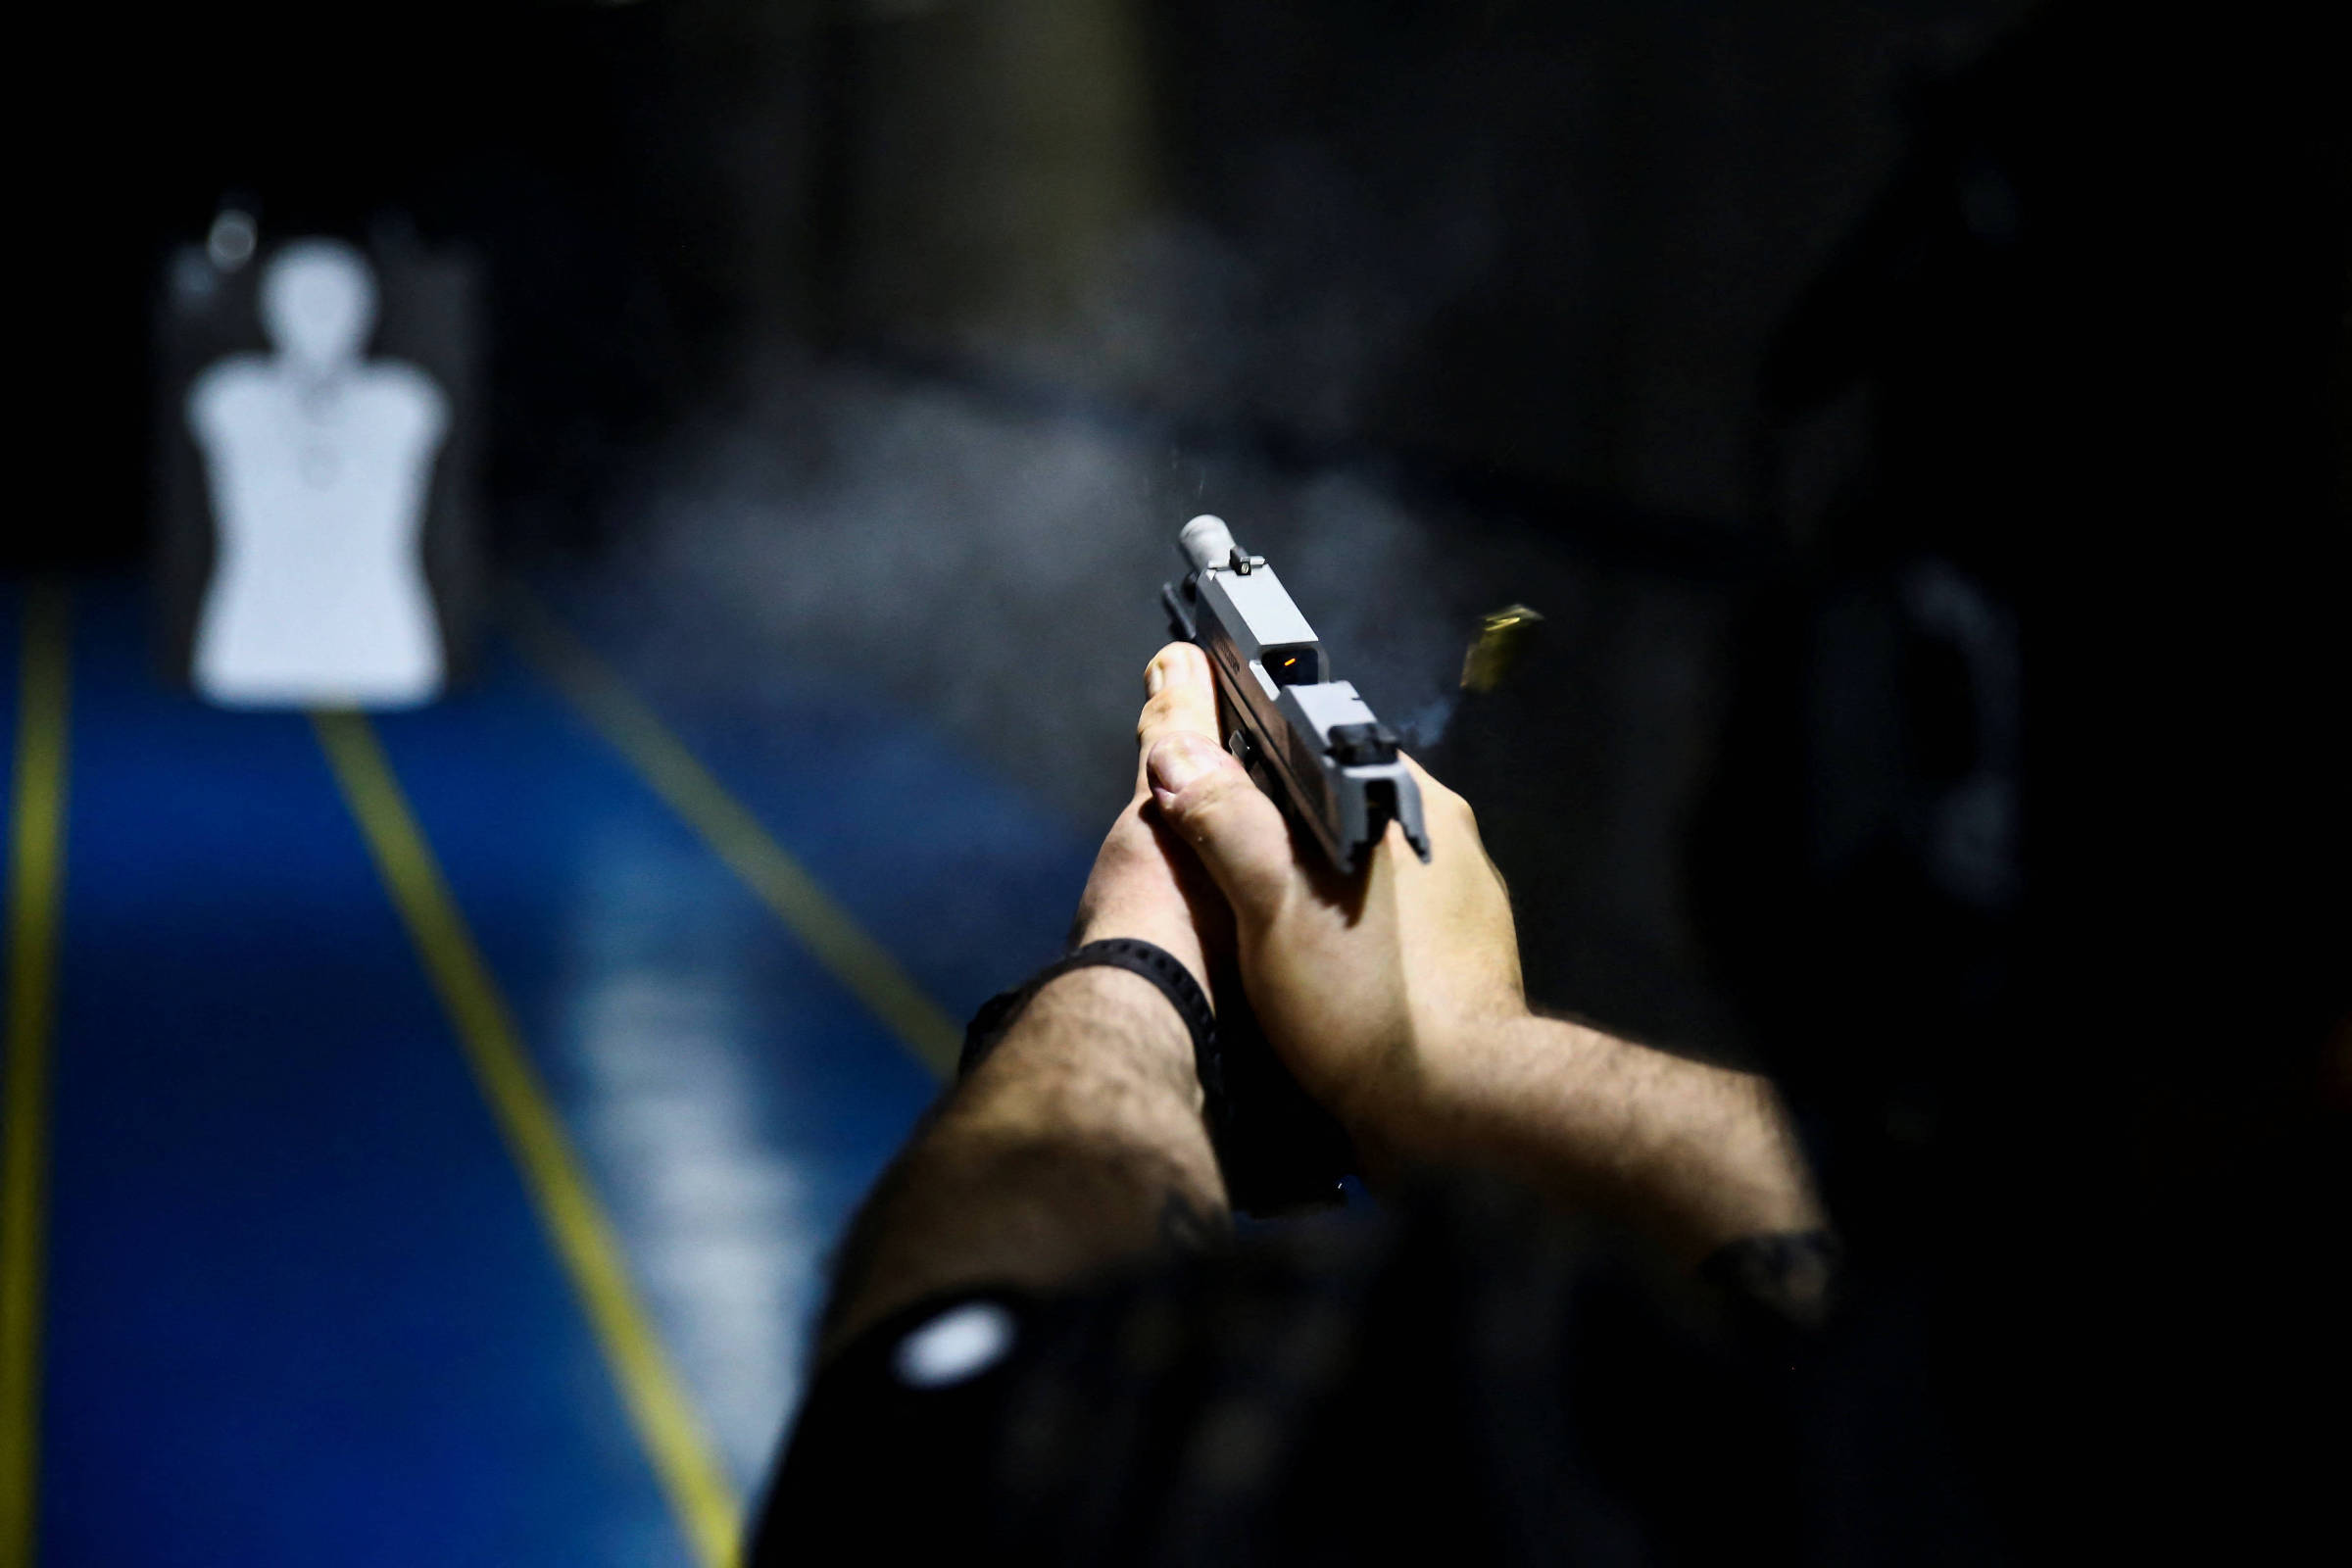 CACs: atiradores andam armados longe de clubes de tiro - 07/08/2022 -  Cotidiano - Folha